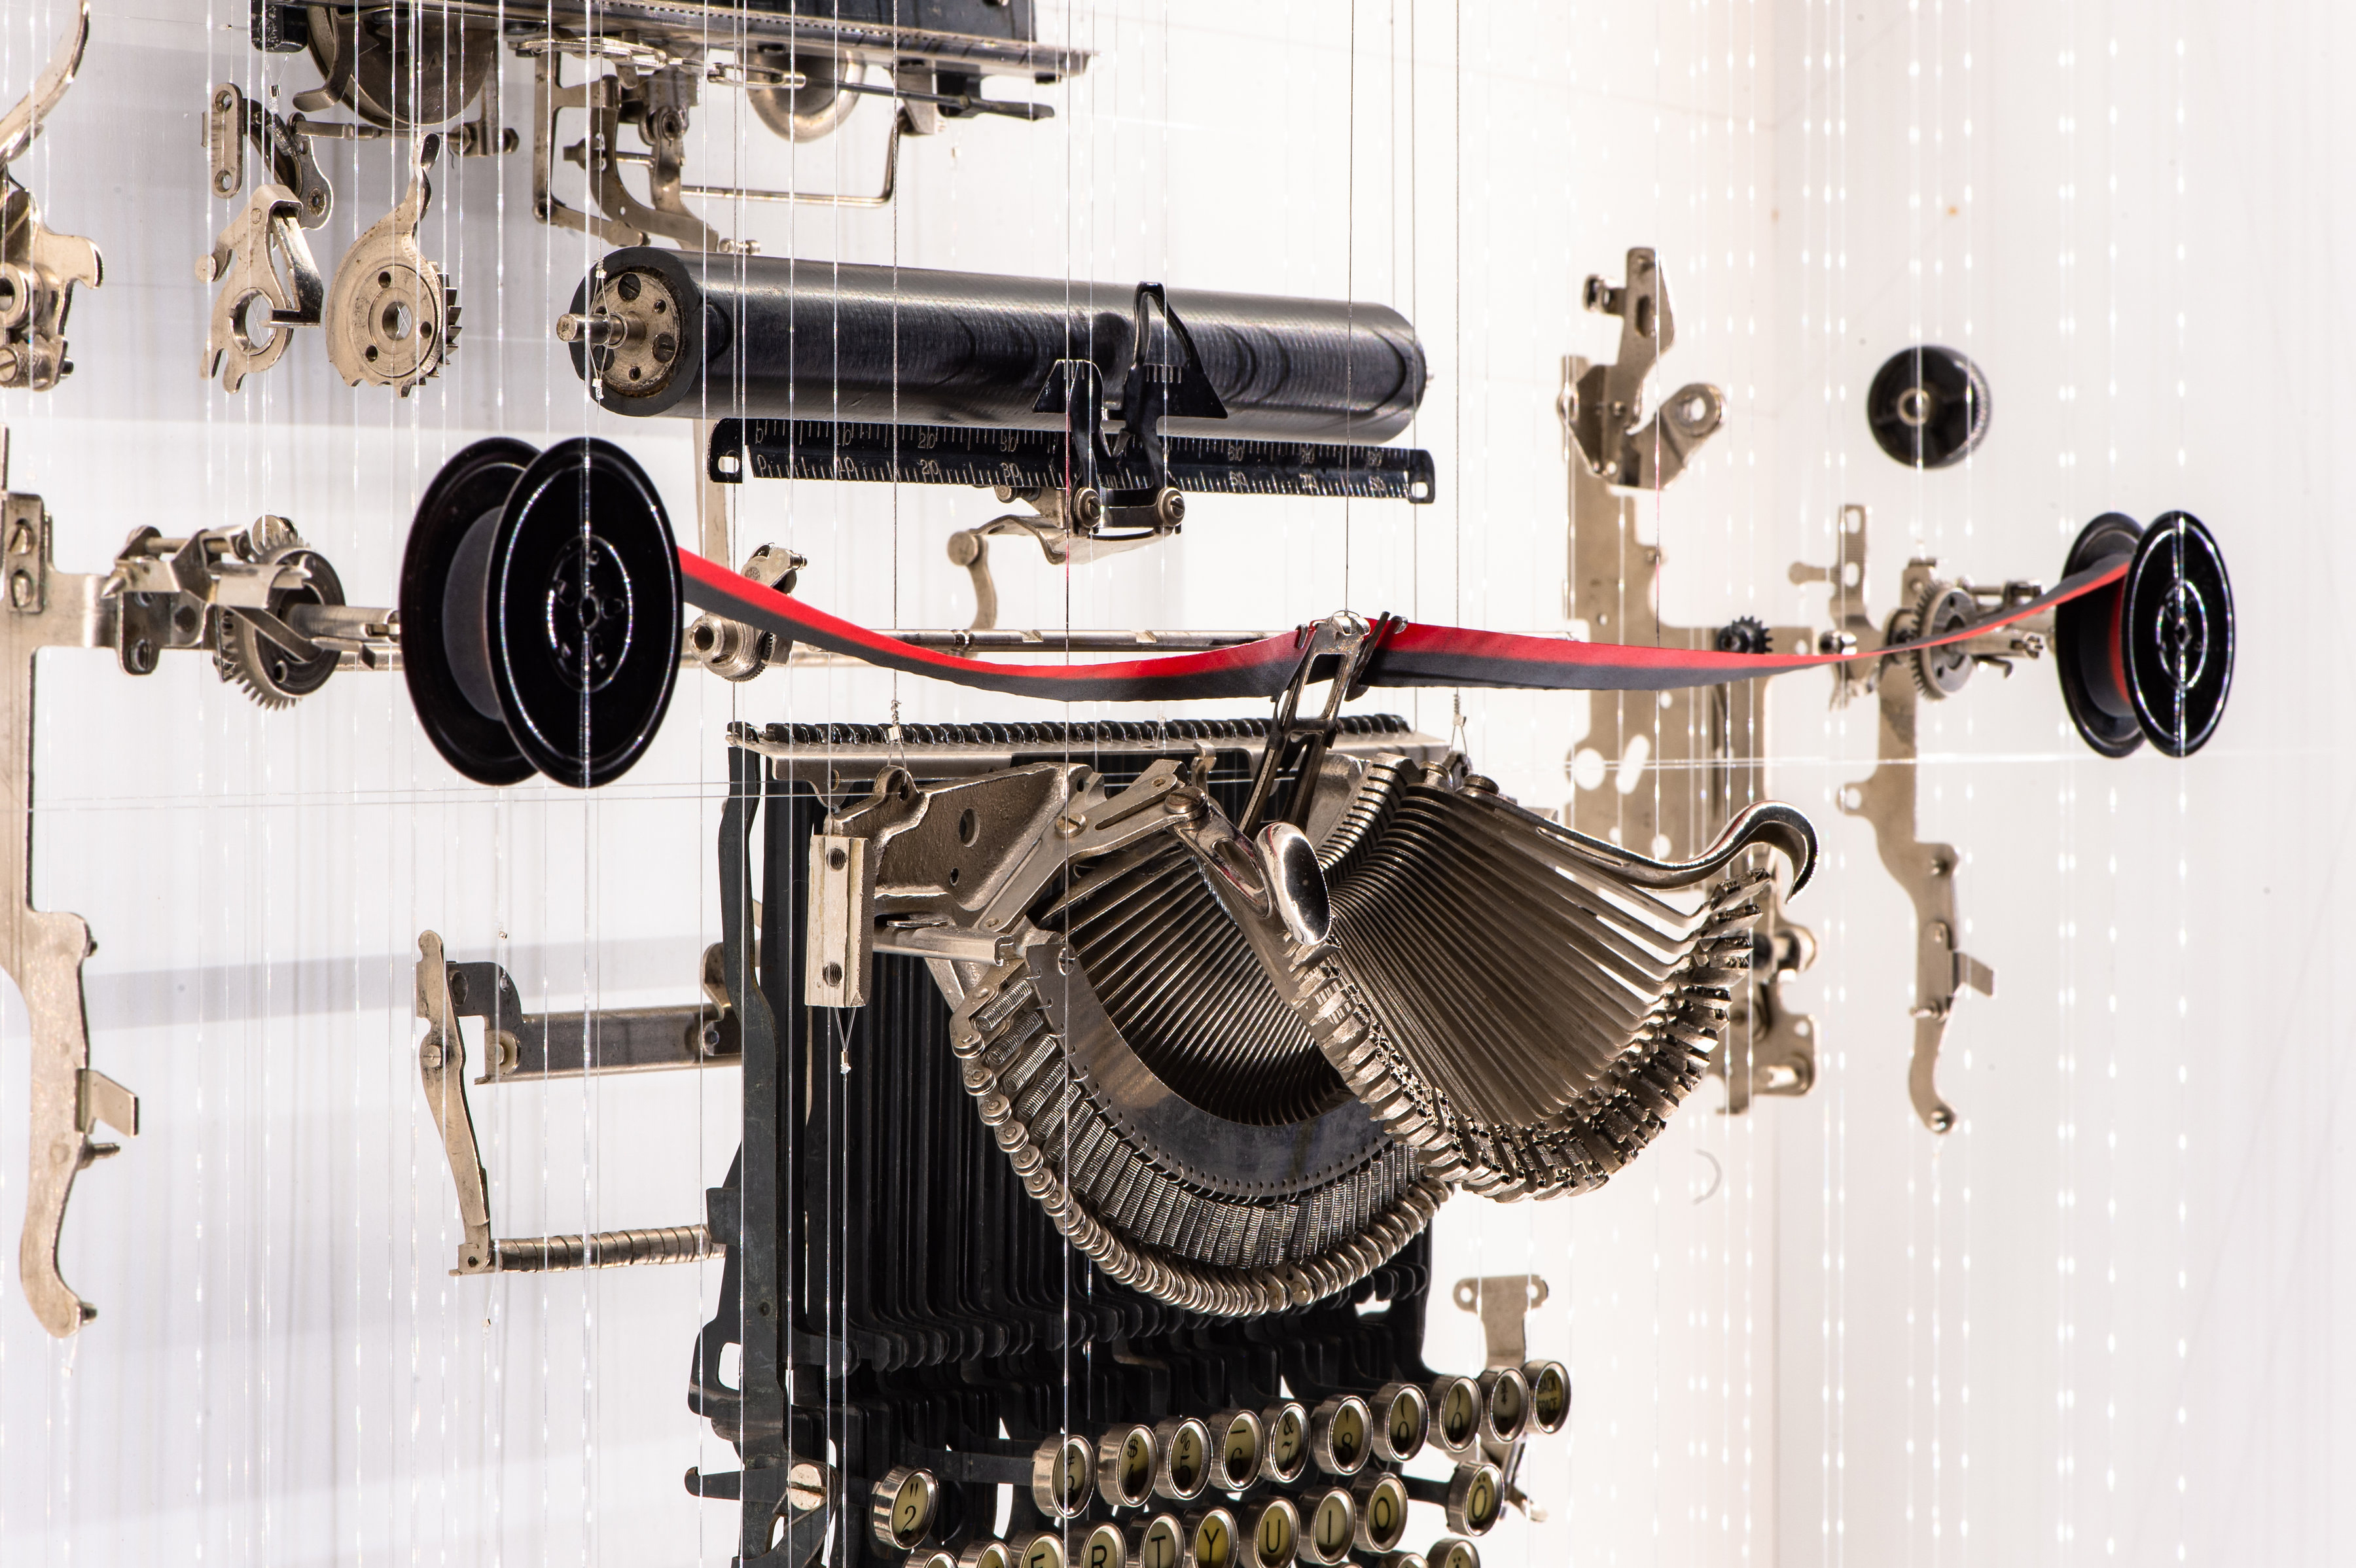 typewriter John A. Peralta sewing machine